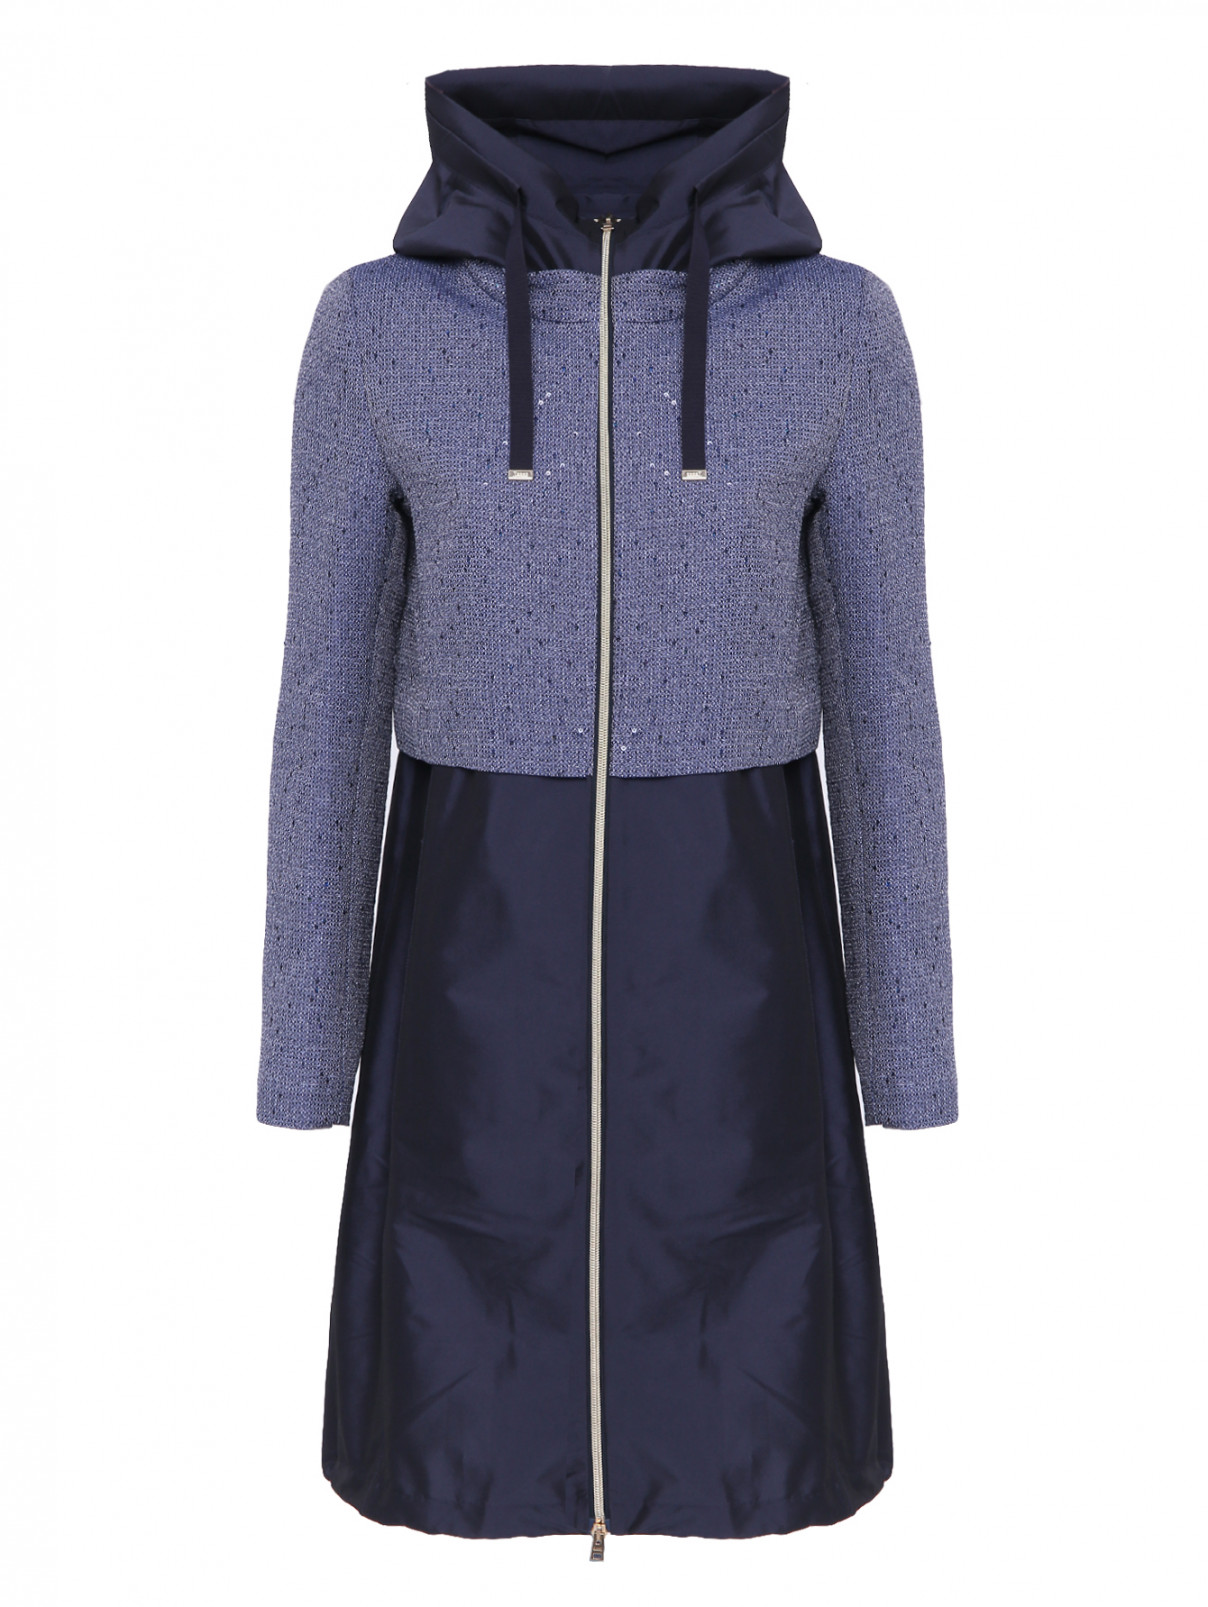 Пальто из комбинированной ткани на молнии Herno  –  Общий вид  – Цвет:  Синий